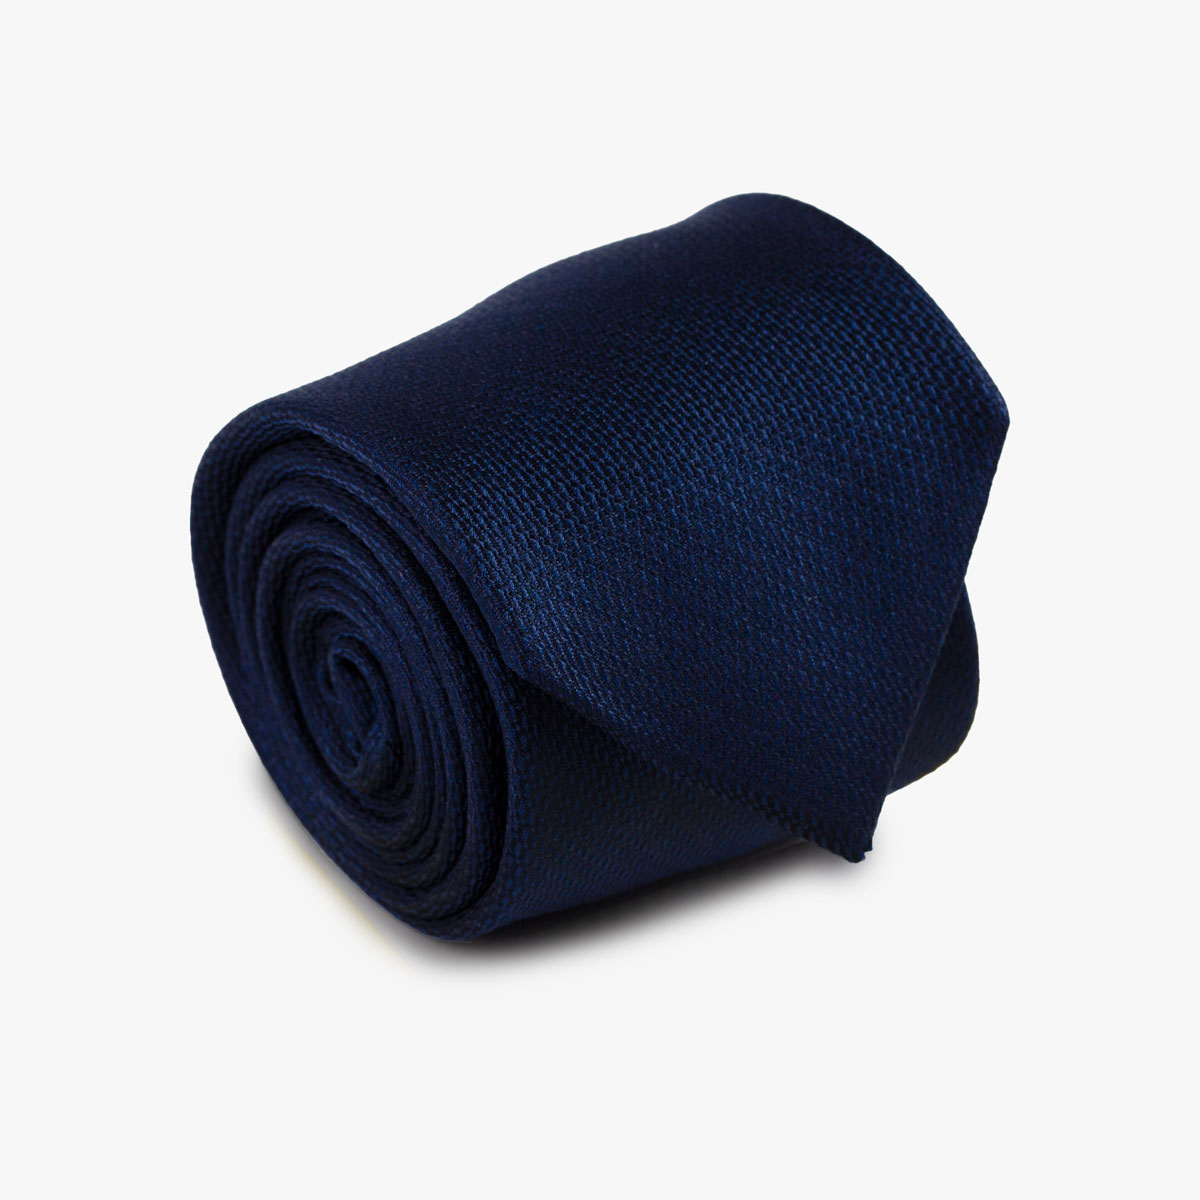 Aufgerollte Krawatte mit Struktur in blau